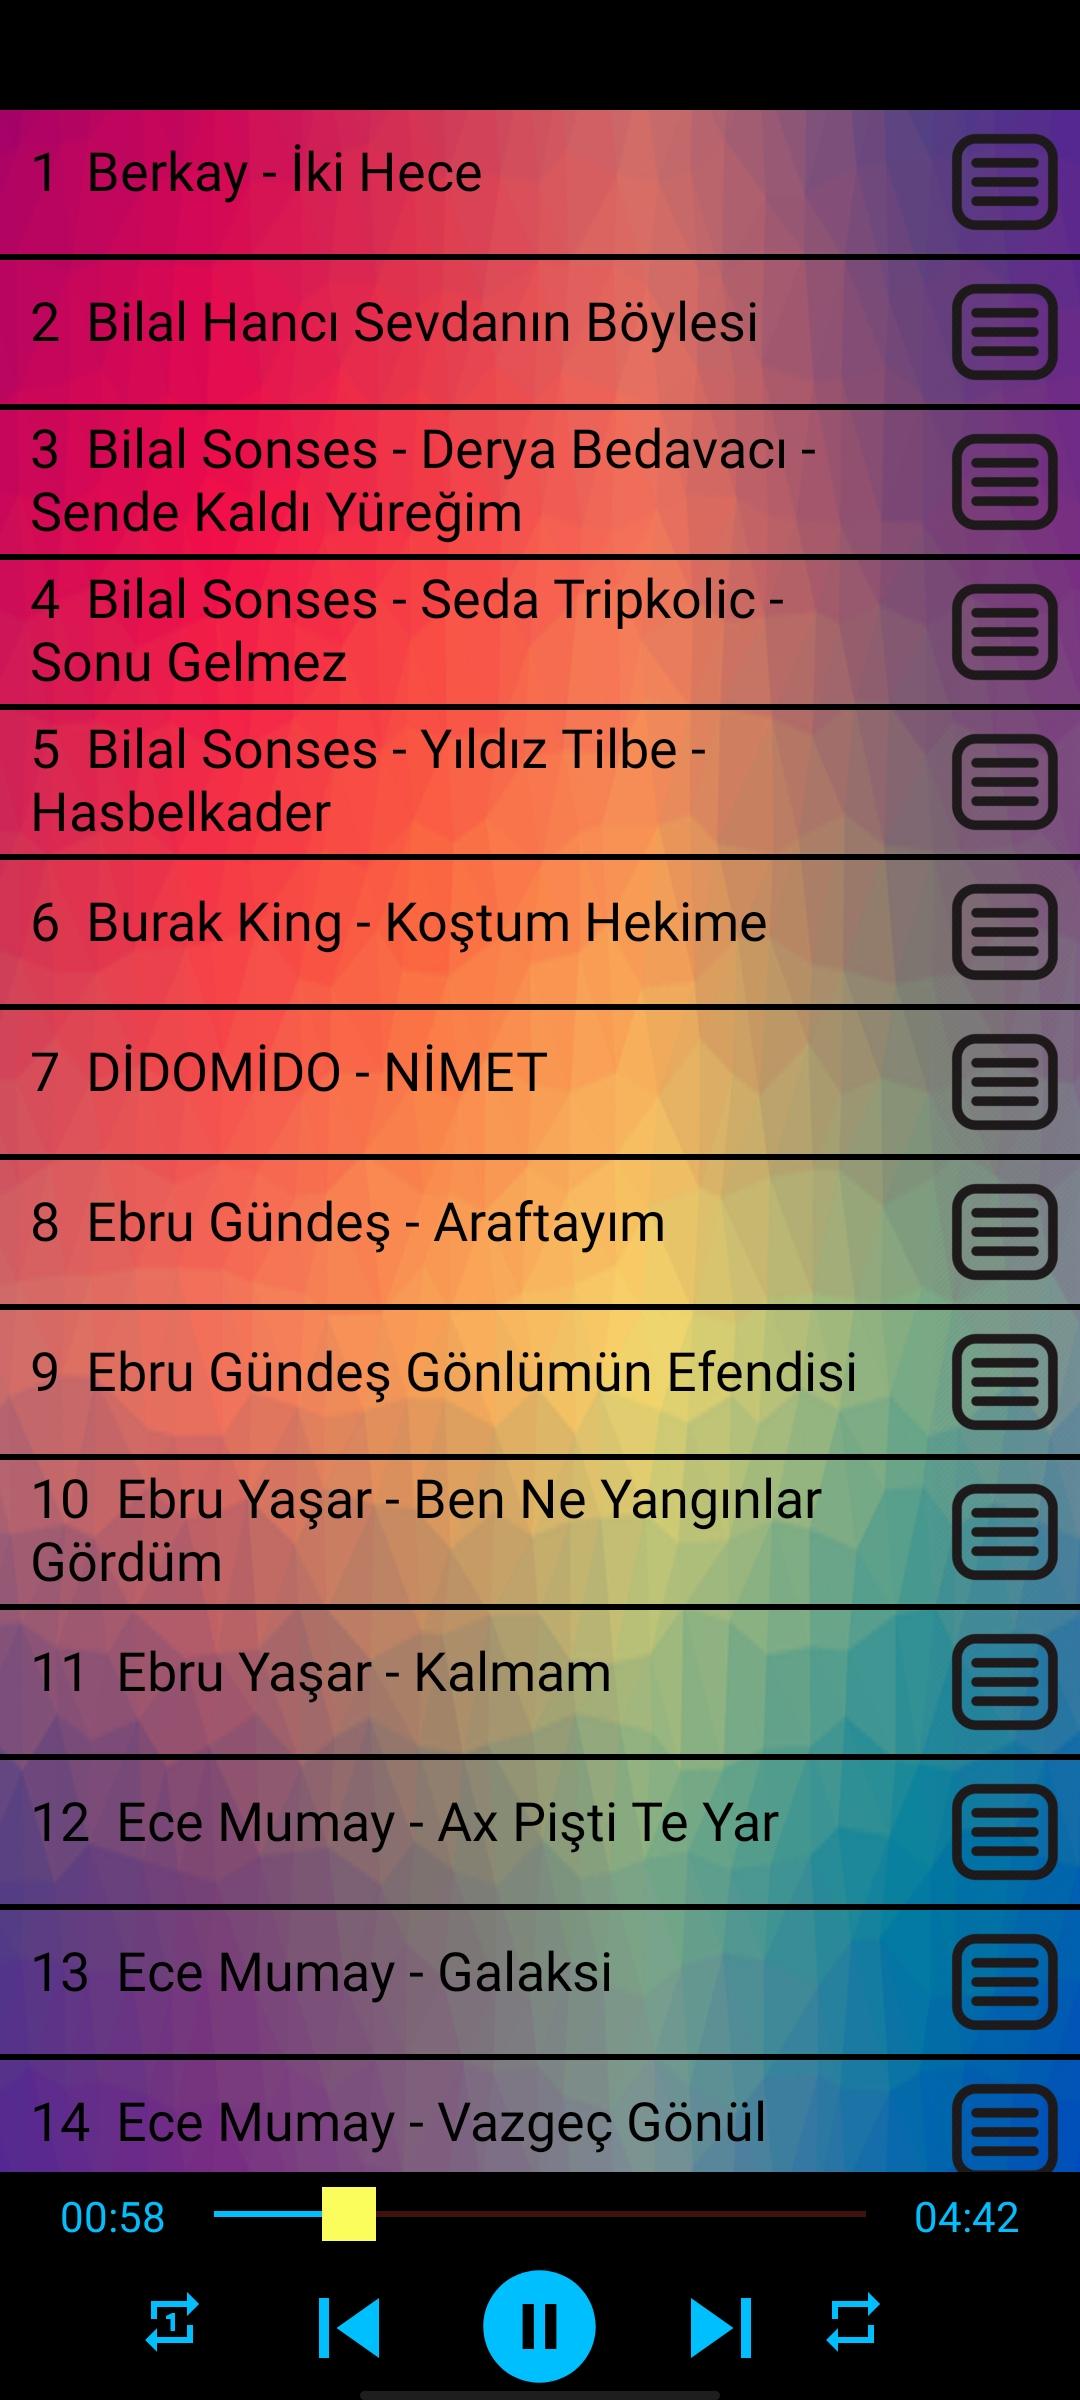 سيئة السمعة رئيس الهجرة 2008 türkçe pop şarkılar listesi -  orythhanddryer.com